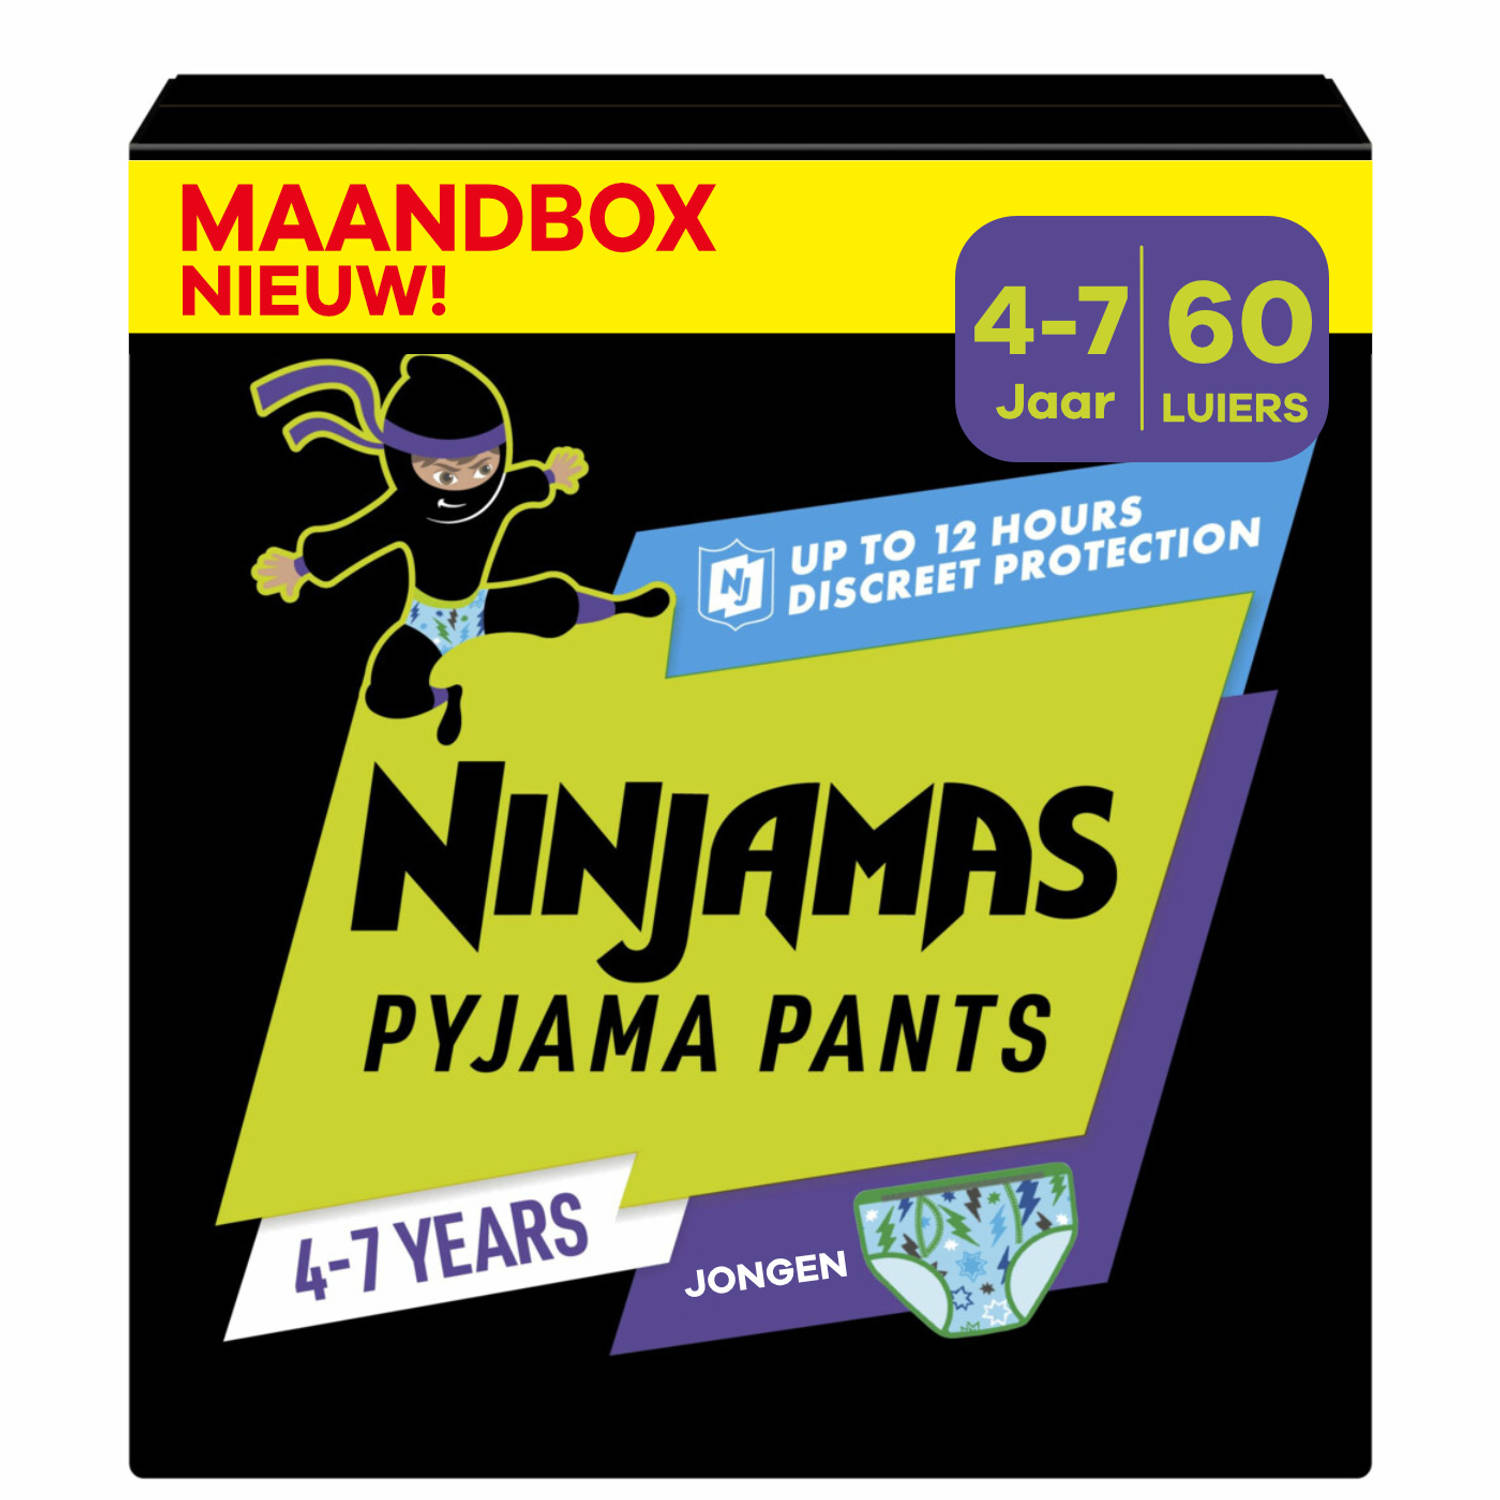 Pampers Ninjamas Pyjama Pants Nacht Jongen 4-7 jaar Maandbox 60 luierbroekjes